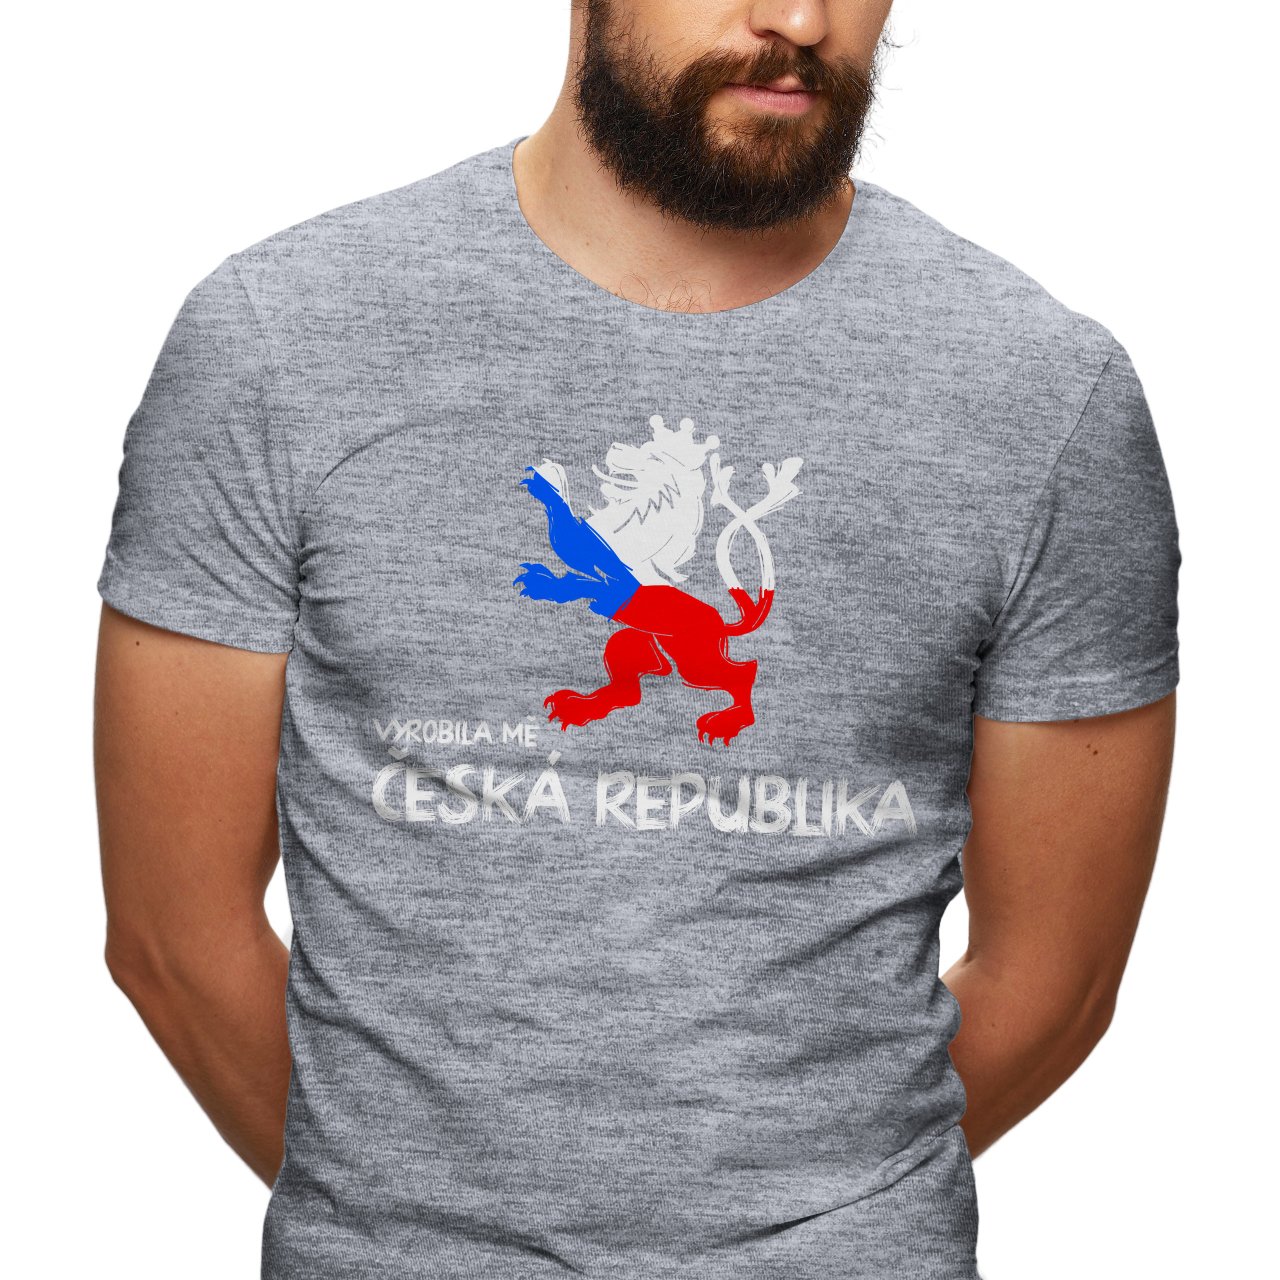 Pánské tričko s potiskem “Vyrobila mě Česká republika” 